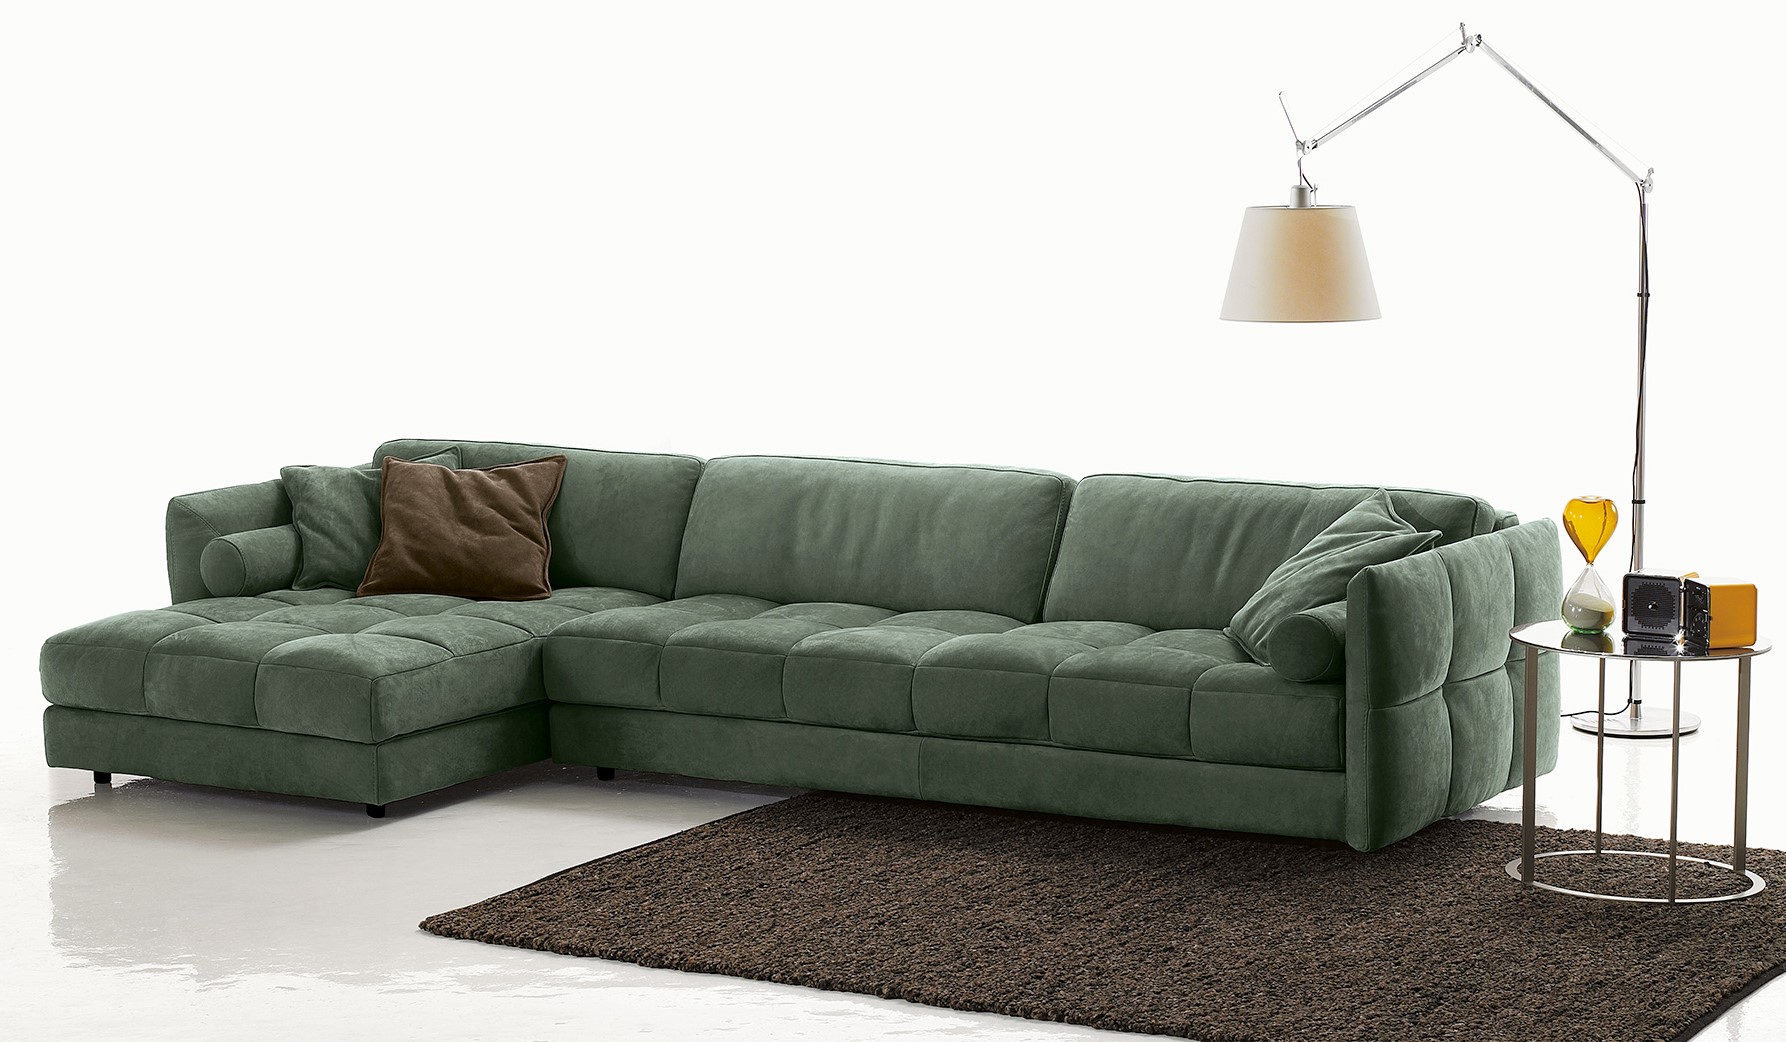 Mood sofa sở hữu những đường nét đơn giản, tay vịn mỏng, bề mặt ghế tạo cảm giác mềm mại.